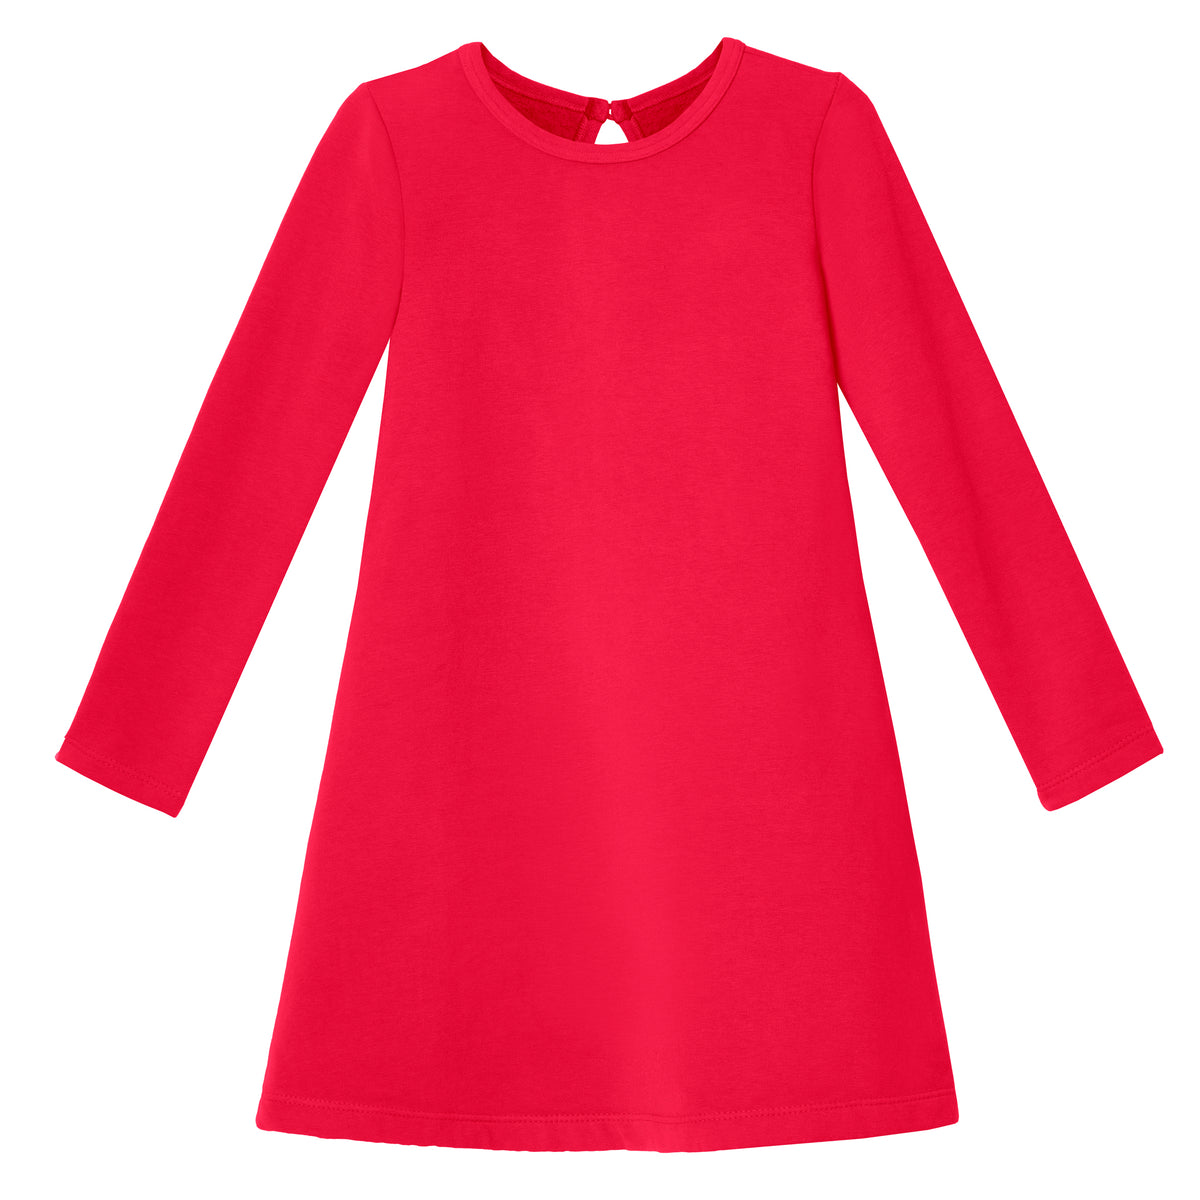 Girls Lightweight Soft Cotton Fleece A-Line Dress| Candy Apple